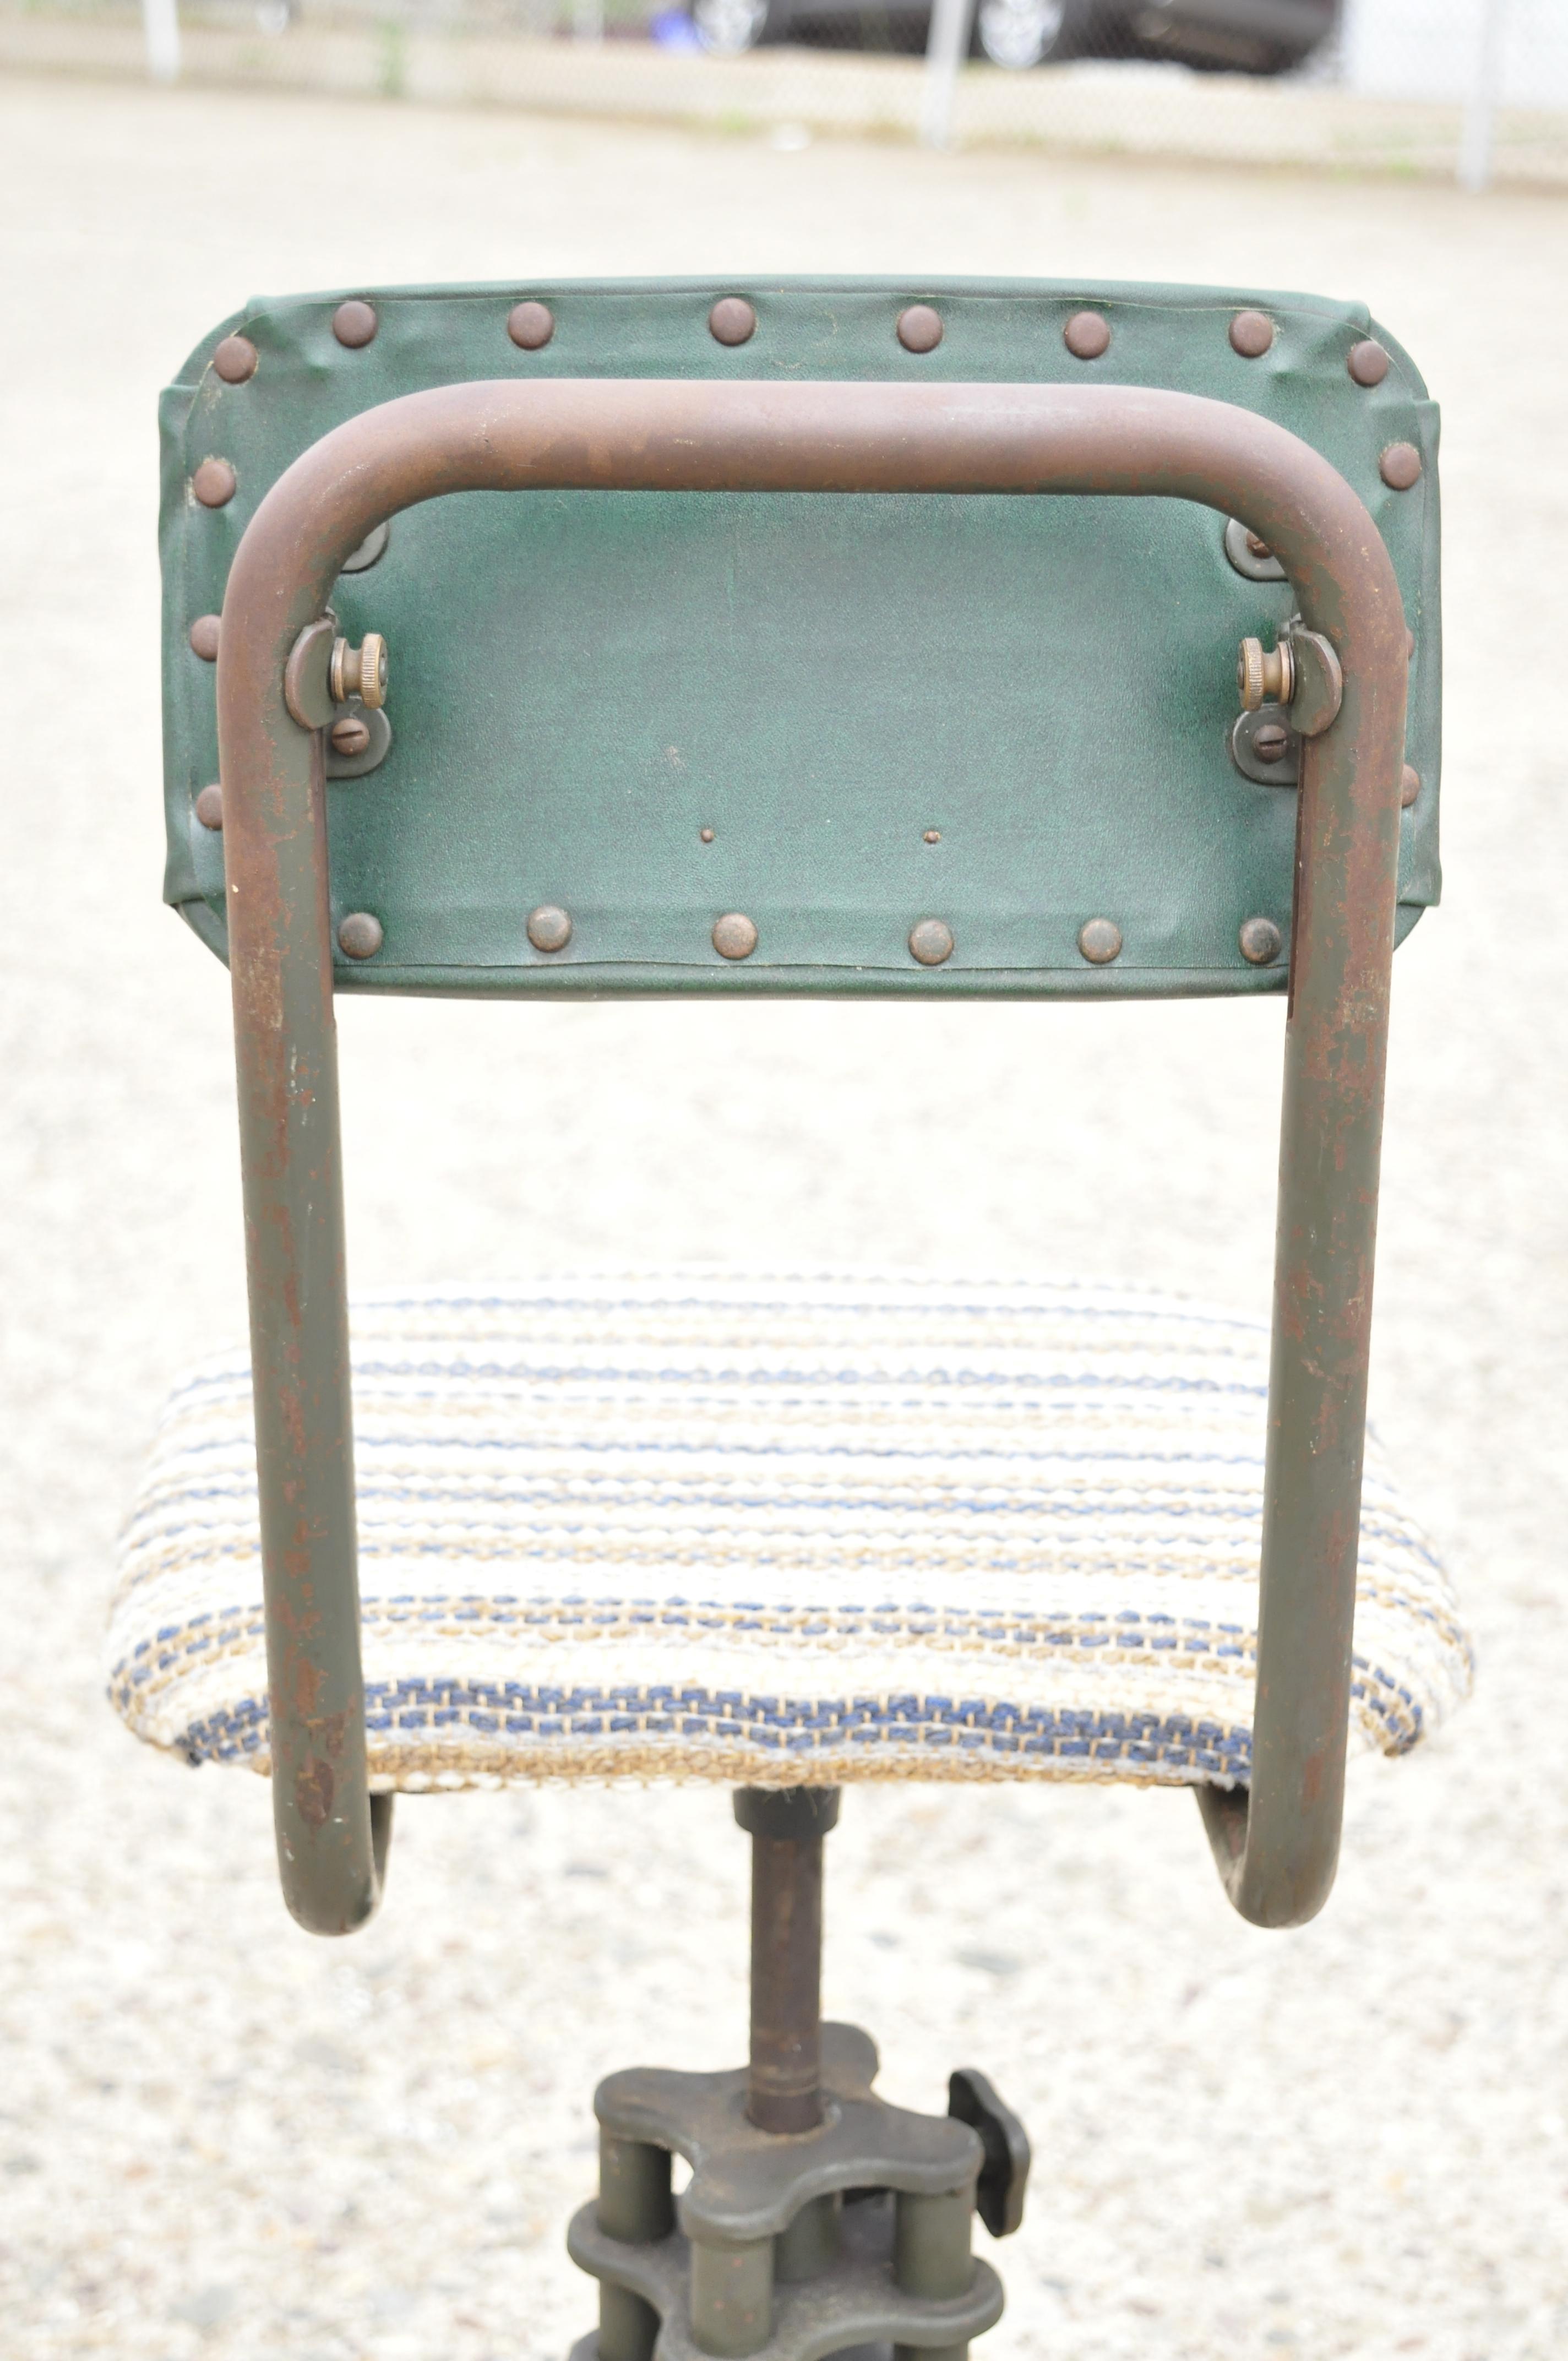 Antique American Industrial Adjustable Steel Metal Drafting Stool Work Chair 2